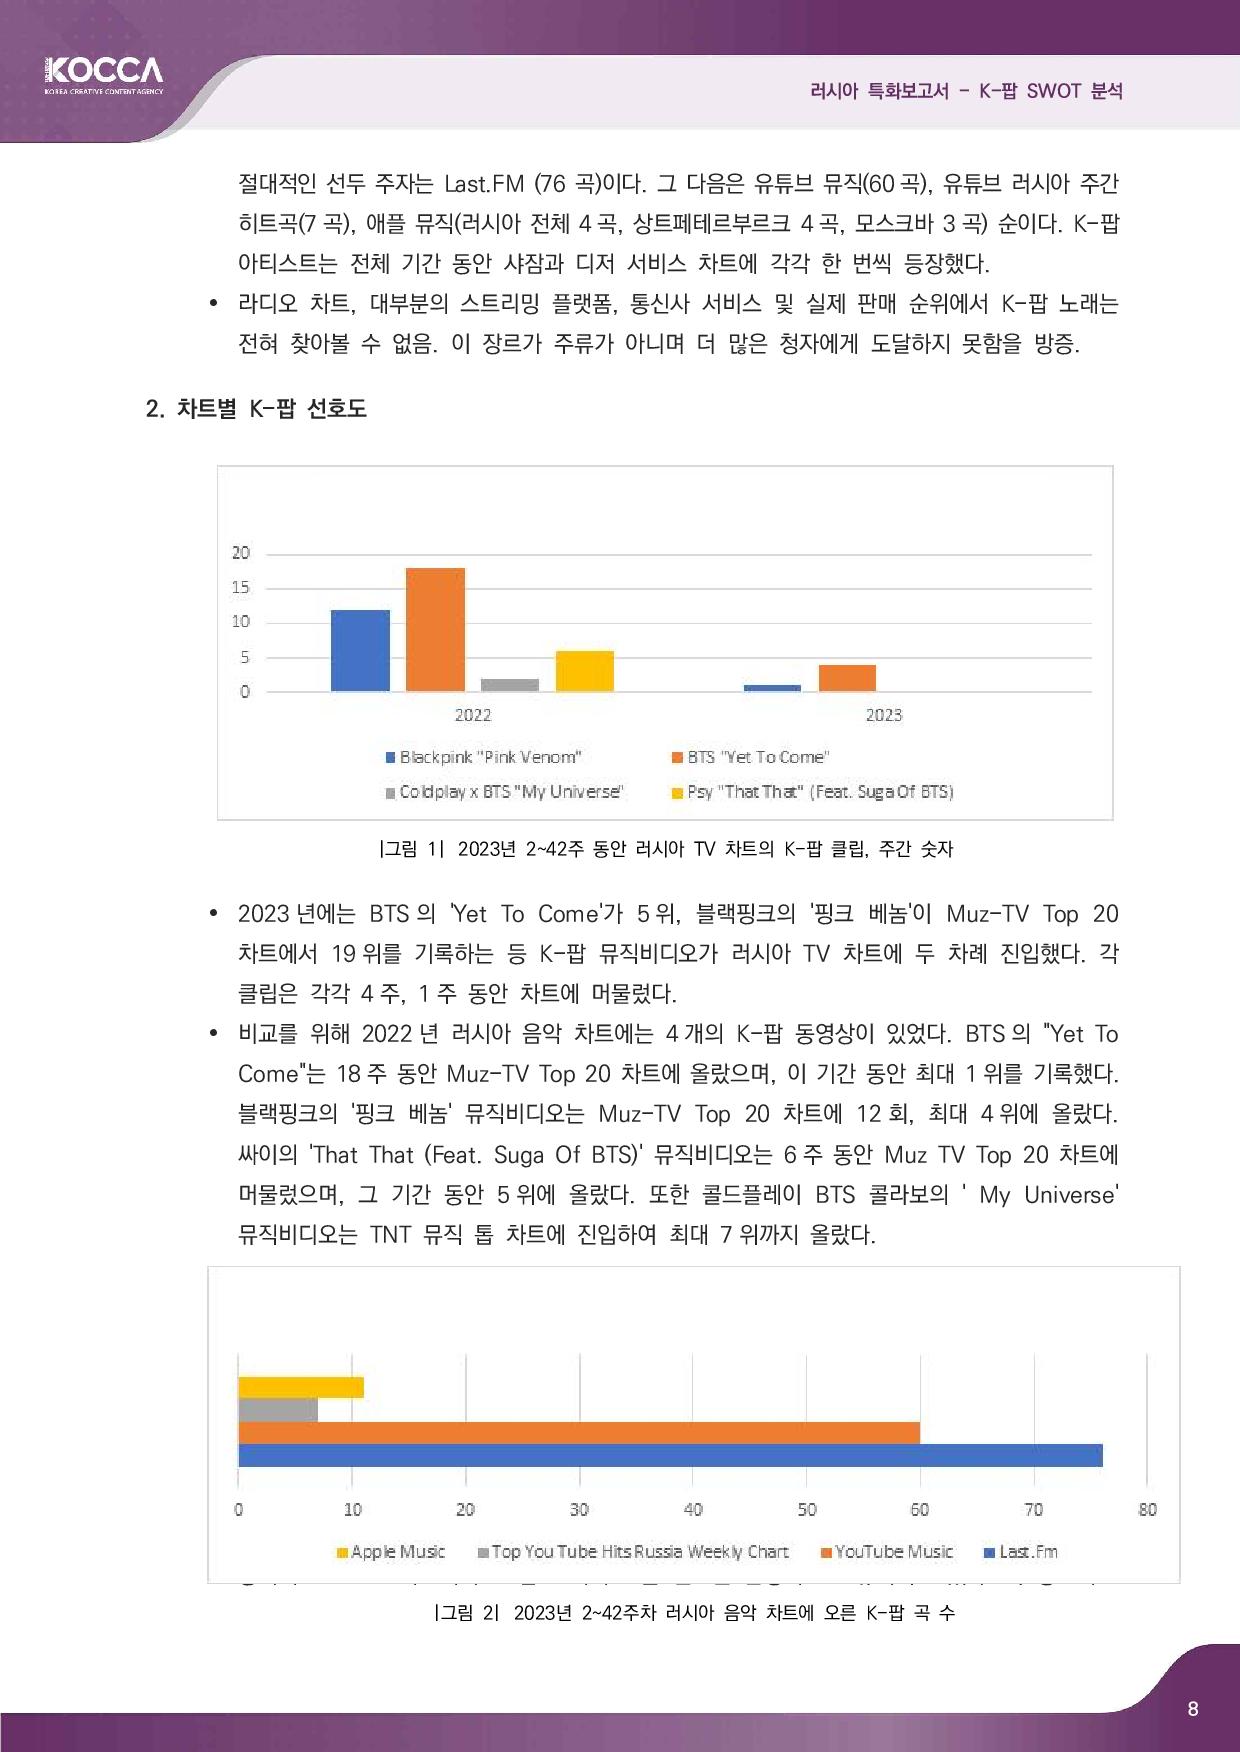 2. 러시아 특화보고서_K-pop SWOT 분석 (3)-page-010.jpg